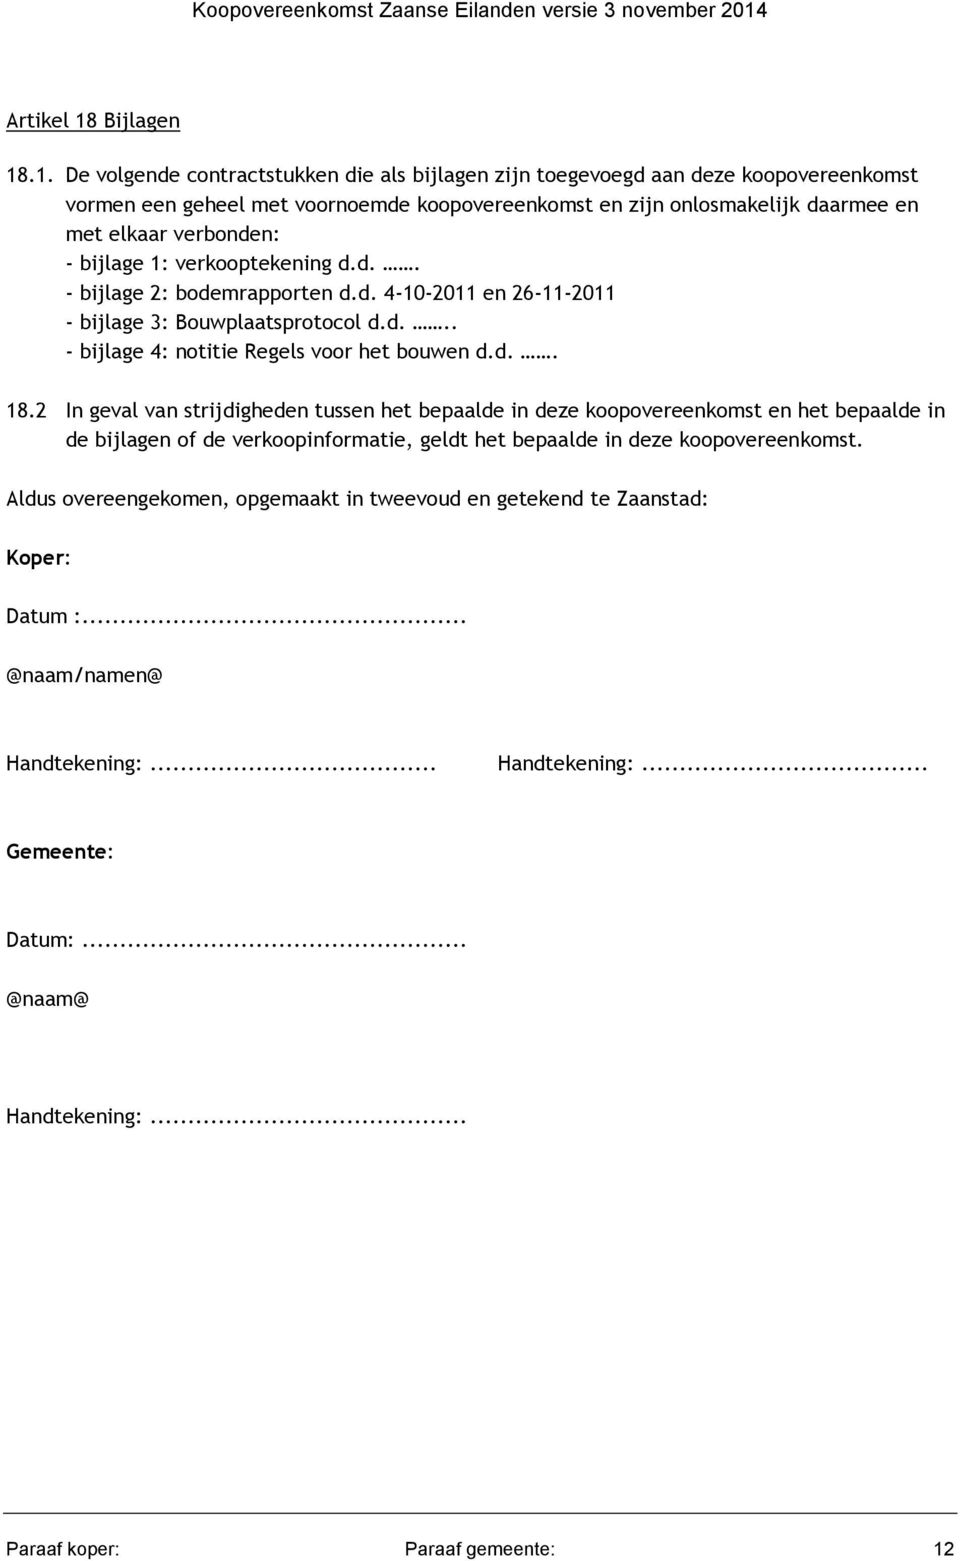 Koopovereenkomst kavel De Zaanse Eilanden - PDF Free Download